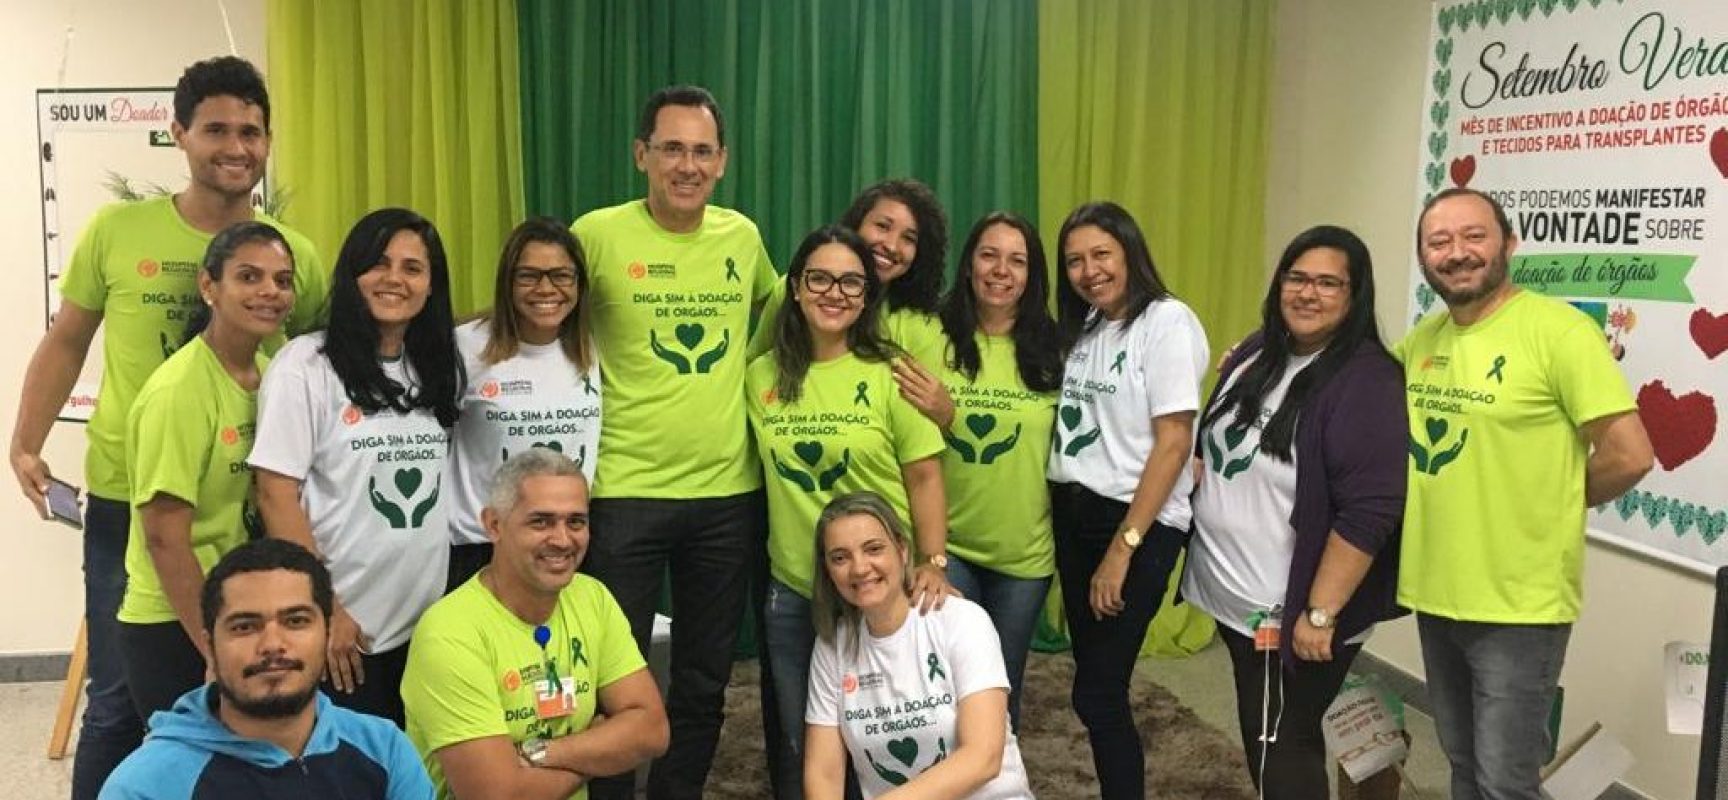 Hospital Regional Costa do Cacau realiza ação de conscientização sobre a doação de órgãos